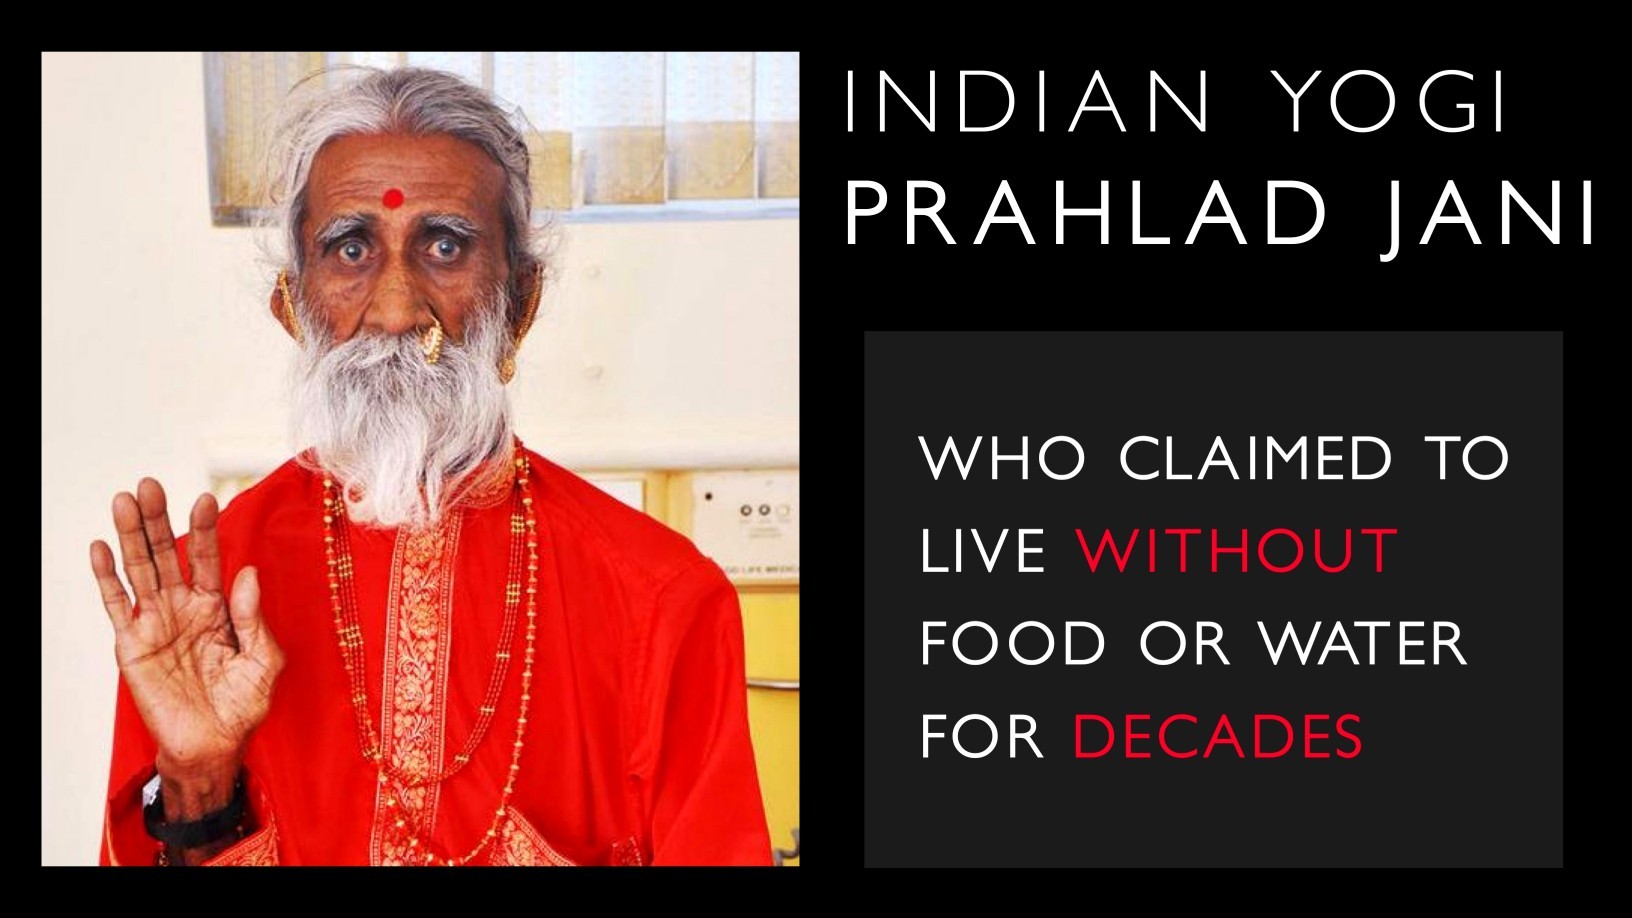 Prahlad Jani - Den indiska yogin som påstod sig leva utan mat eller vatten i årtionden 1